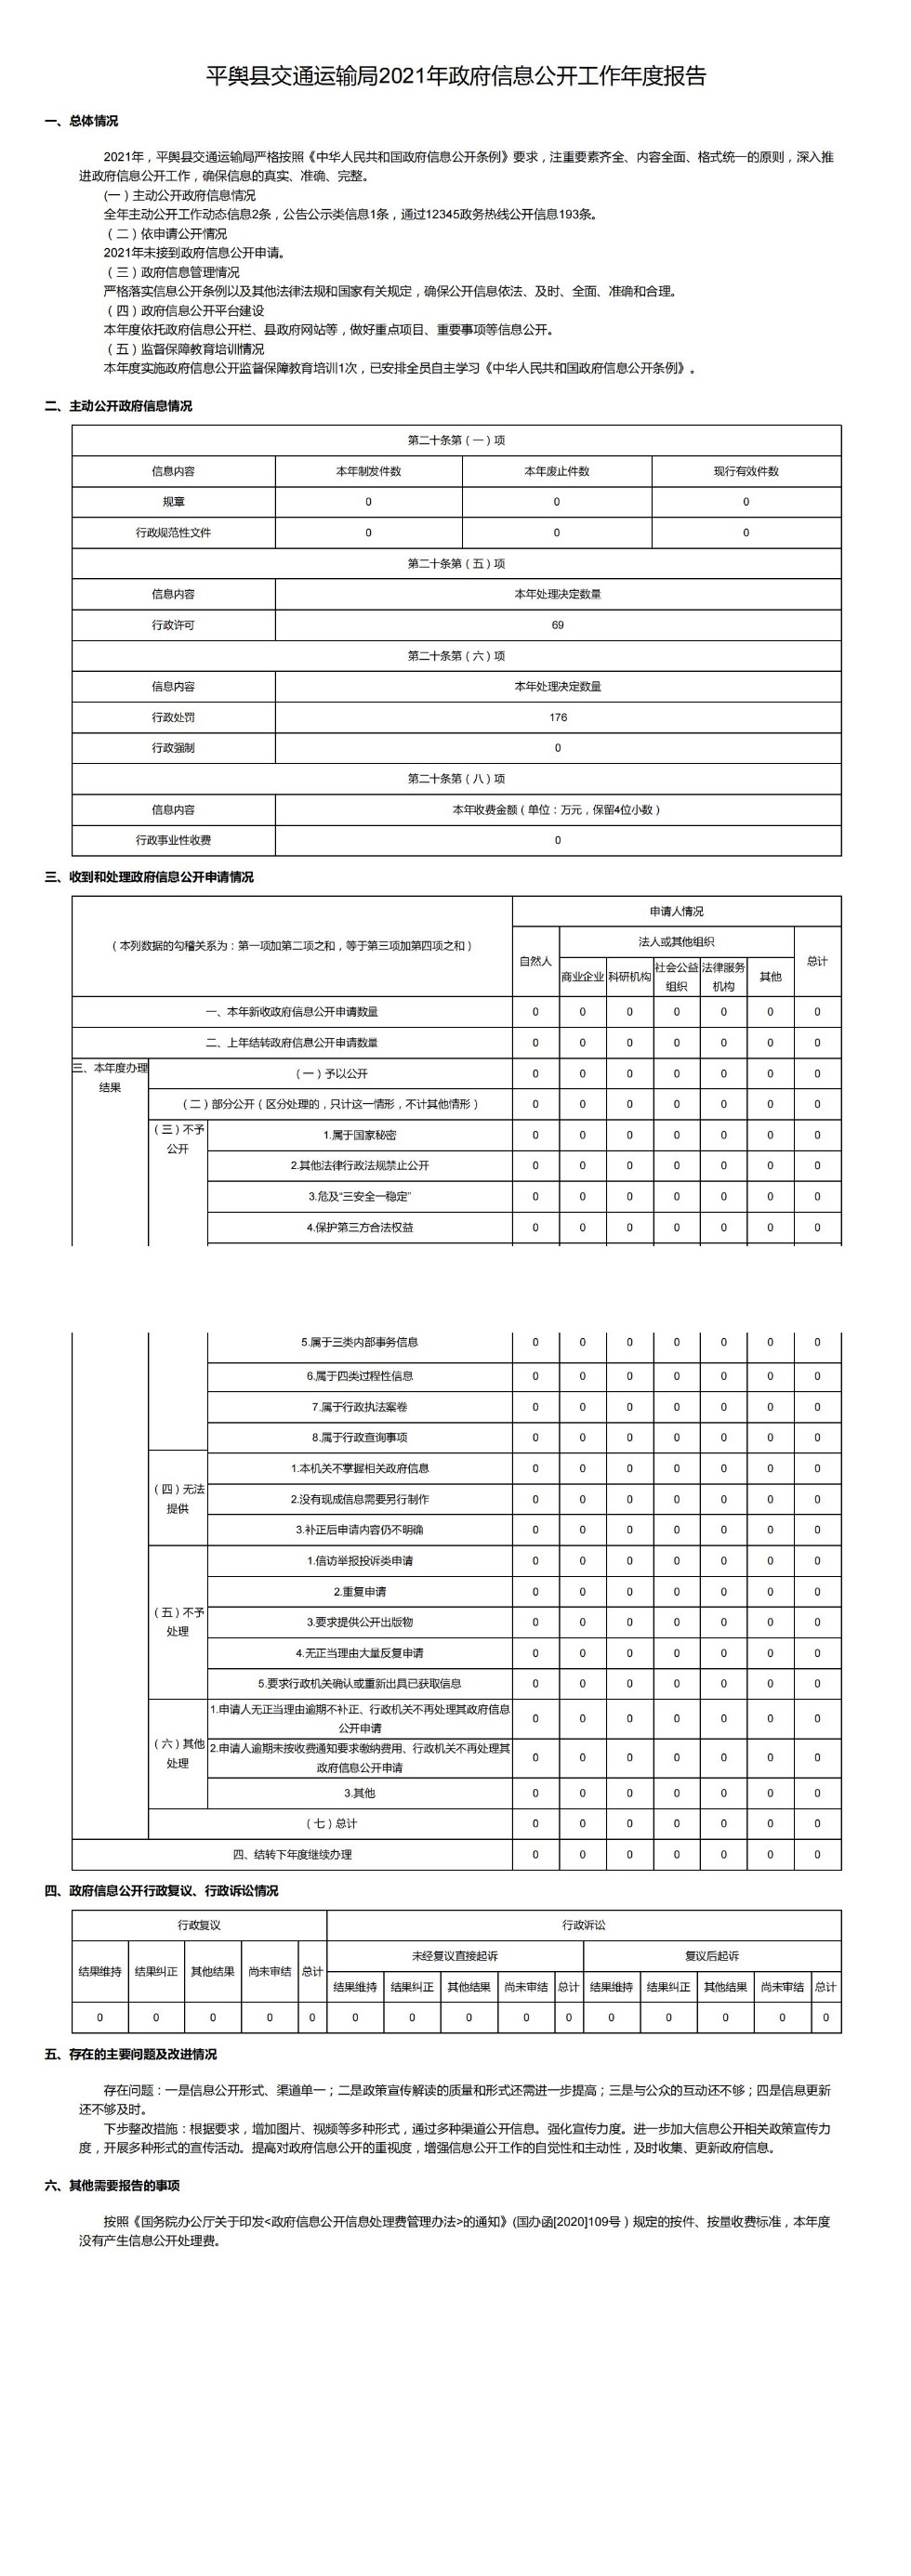 平舆县交通运输局2021年政府信息公开工作年度报告_00.jpg